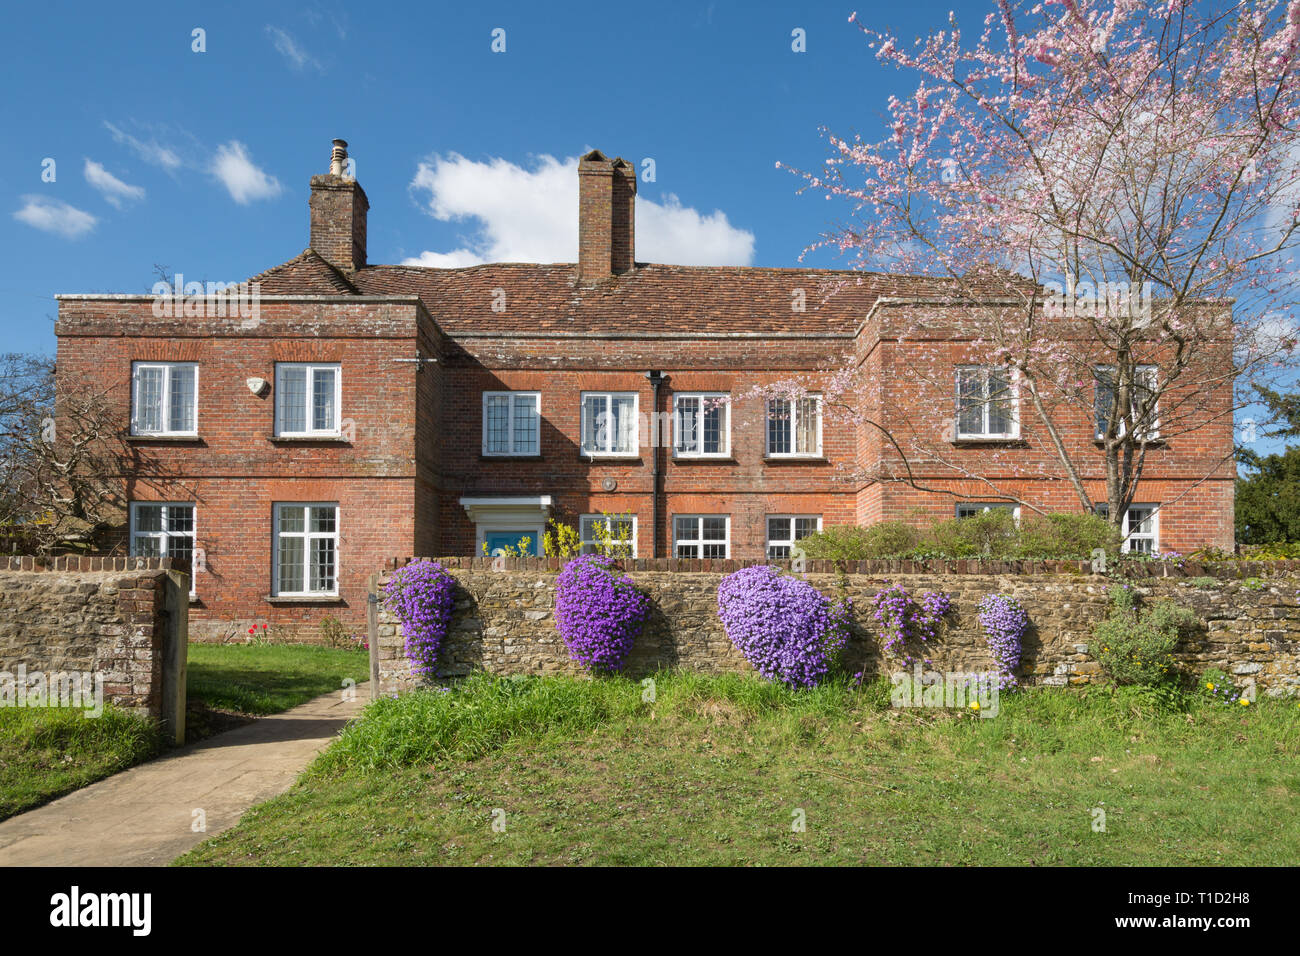 Le bâtiment historique Hill Farm House dans le village de Thursley, Surrey, UK, sur une journée de printemps ensoleillée avec des fleurs rose pourpre fleurs aubretia et arbres Banque D'Images